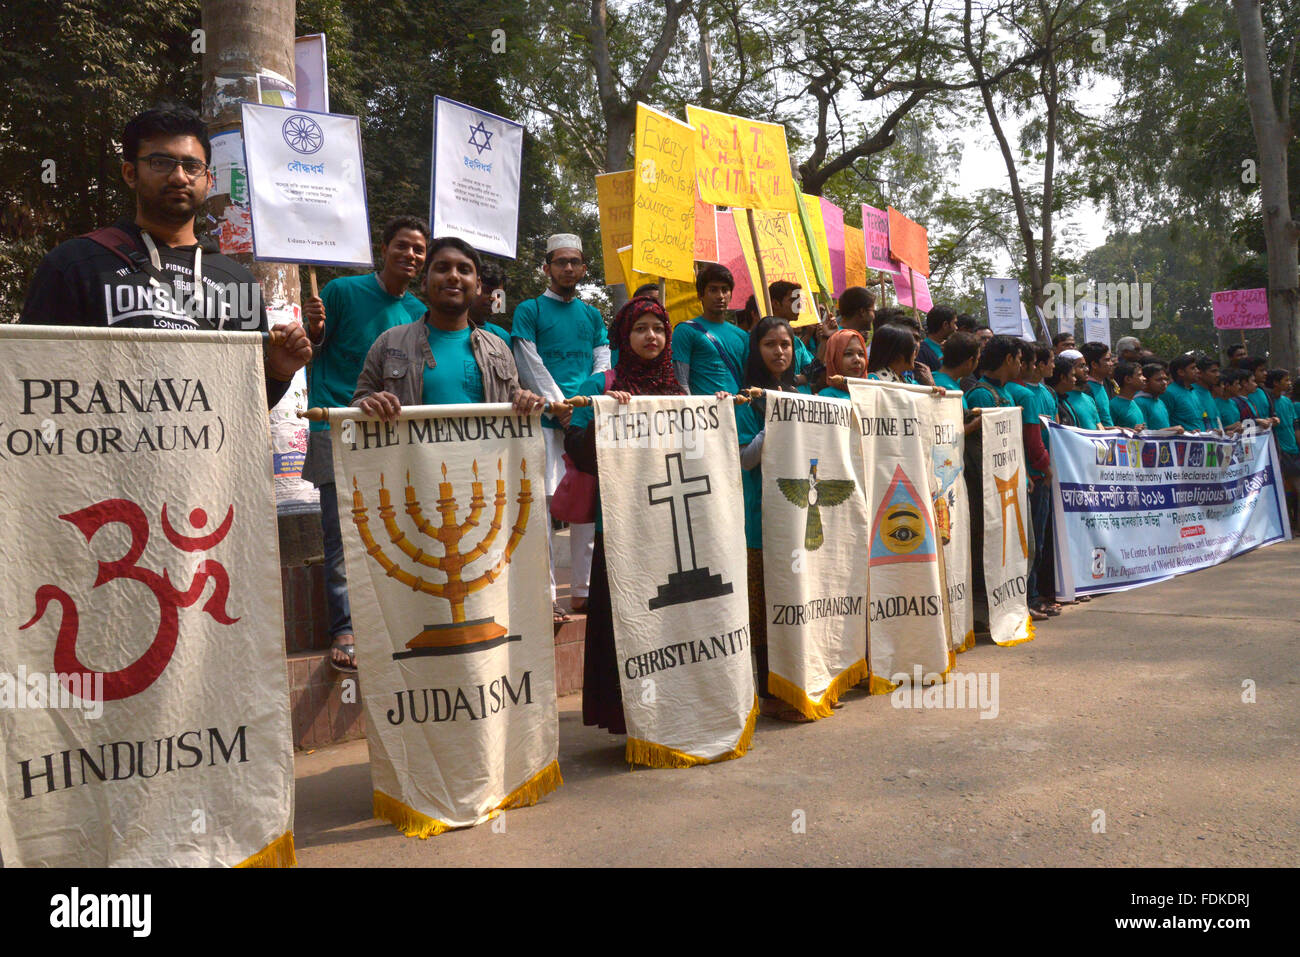 Centro para el diálogo interreligioso e intercultural y el Departamento de las religiones del mundo y de la cultura, de la Universidad de Dhaka, organizaron conjuntamente un rally Foto de stock